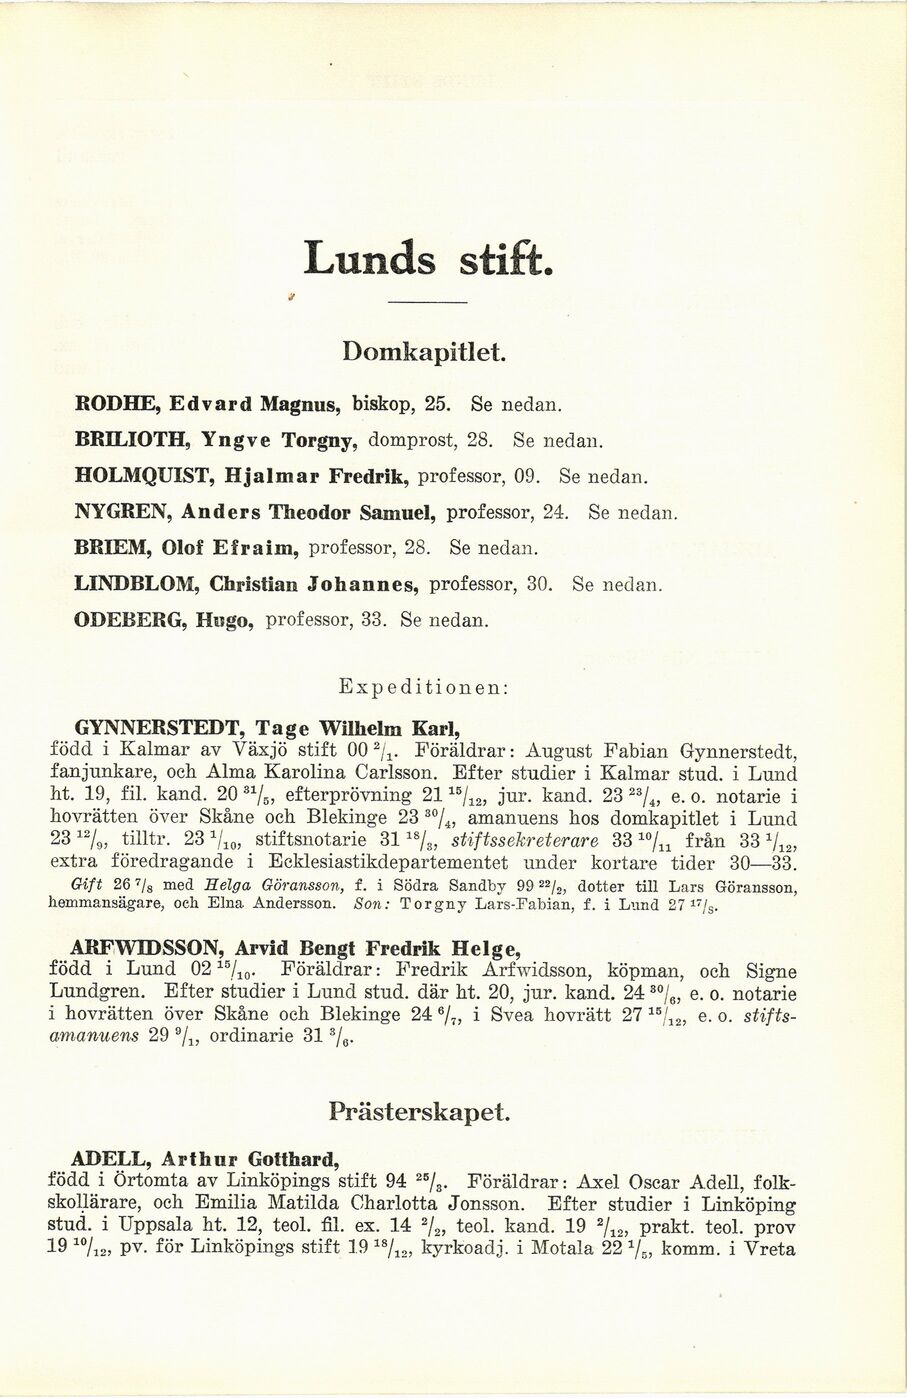 339 (Biografisk matrikel över Svenska kyrkans prästerskap / 1934)